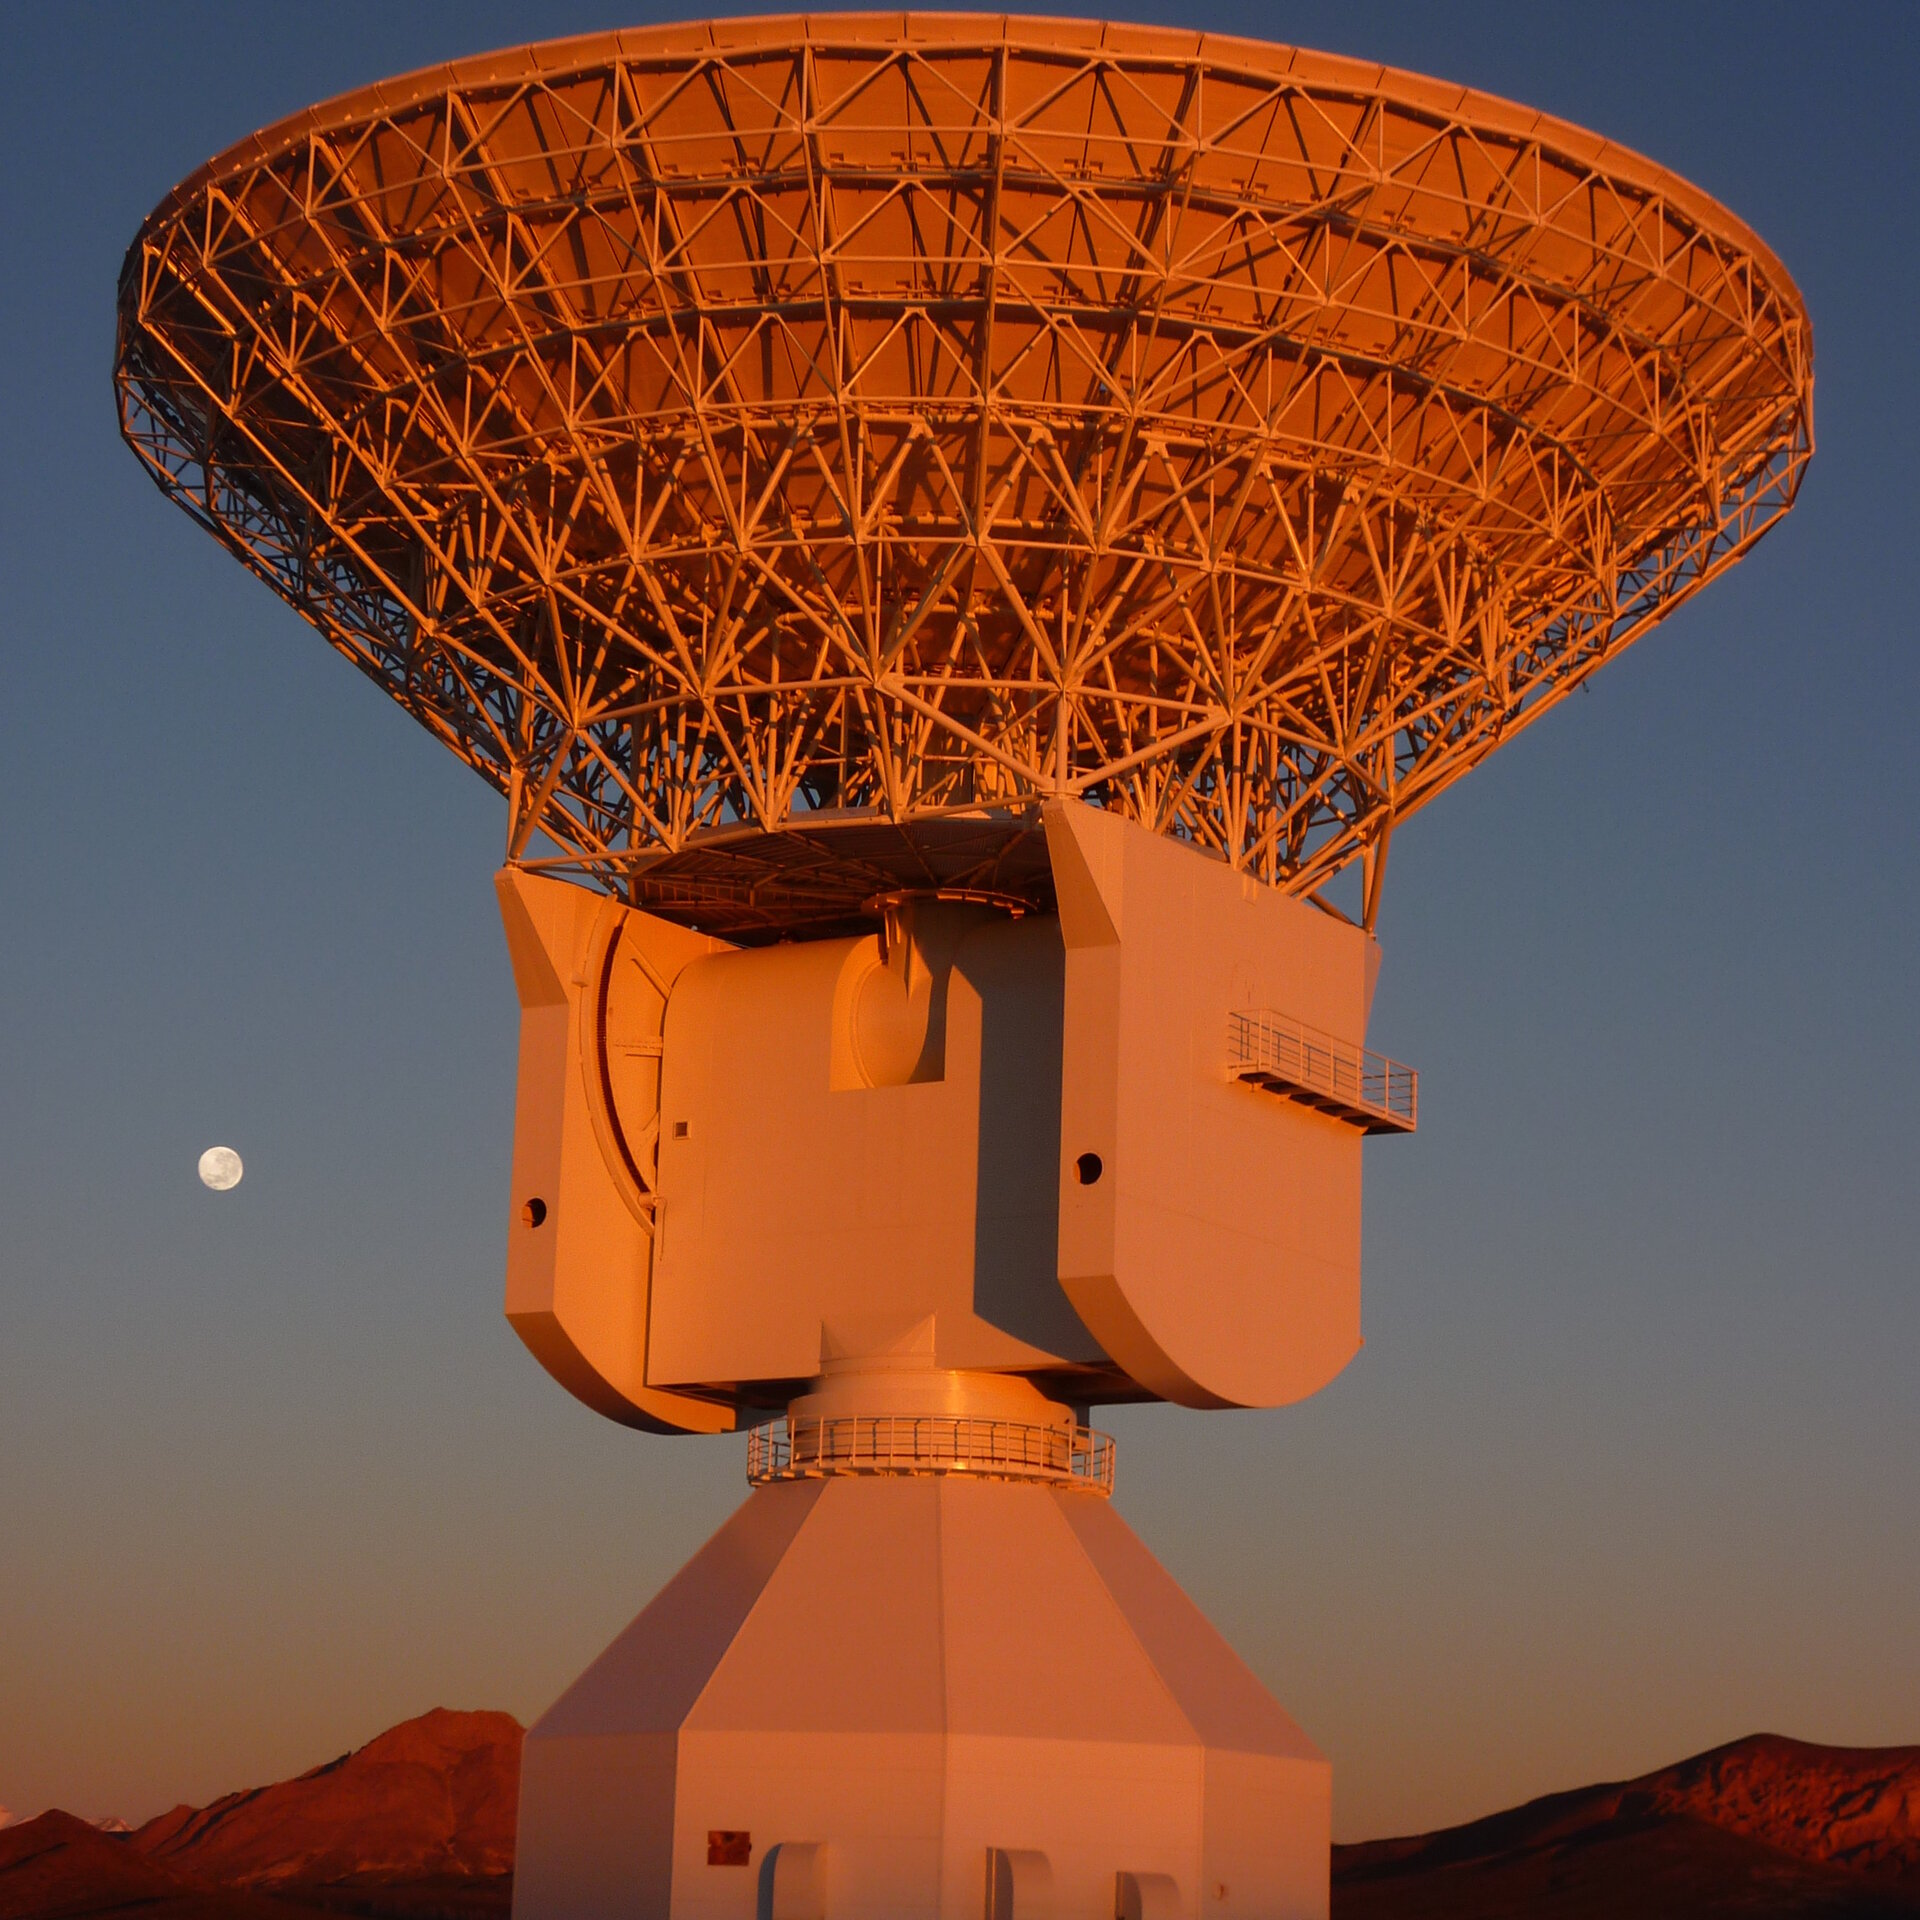 ESA's Malargüe tracking station